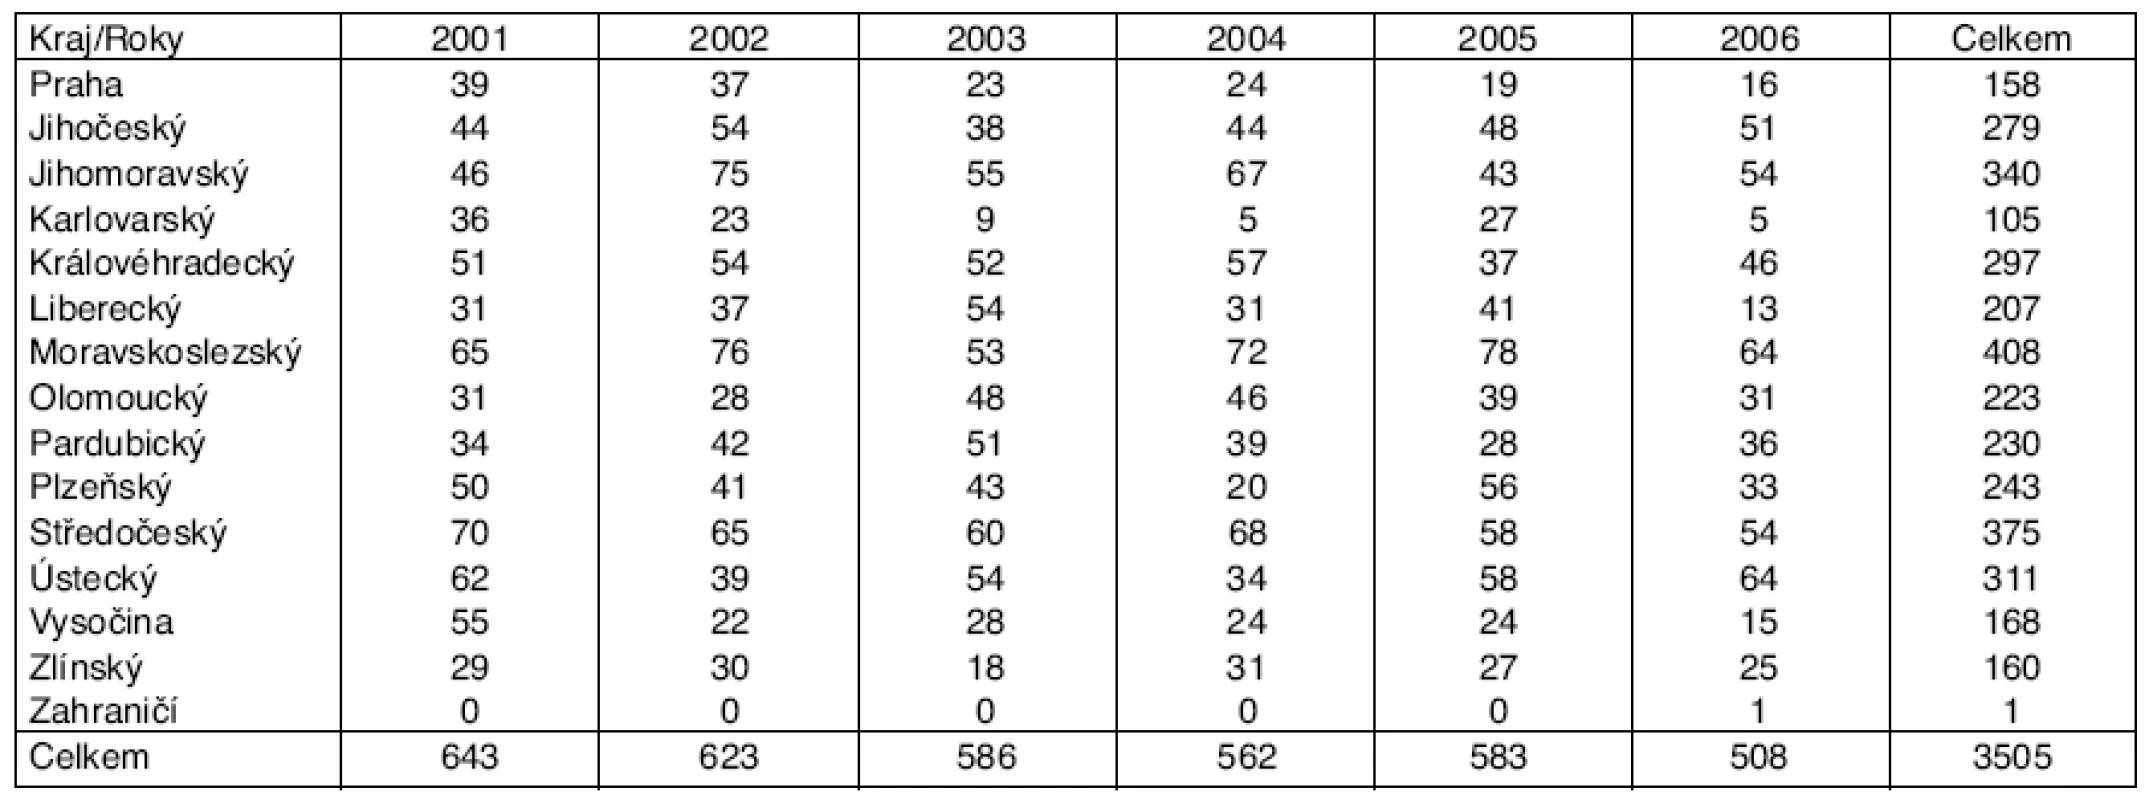 Profesionální onemocnění u žen hlášená v ČR v letech 2001–2006, podle kraje hlášení